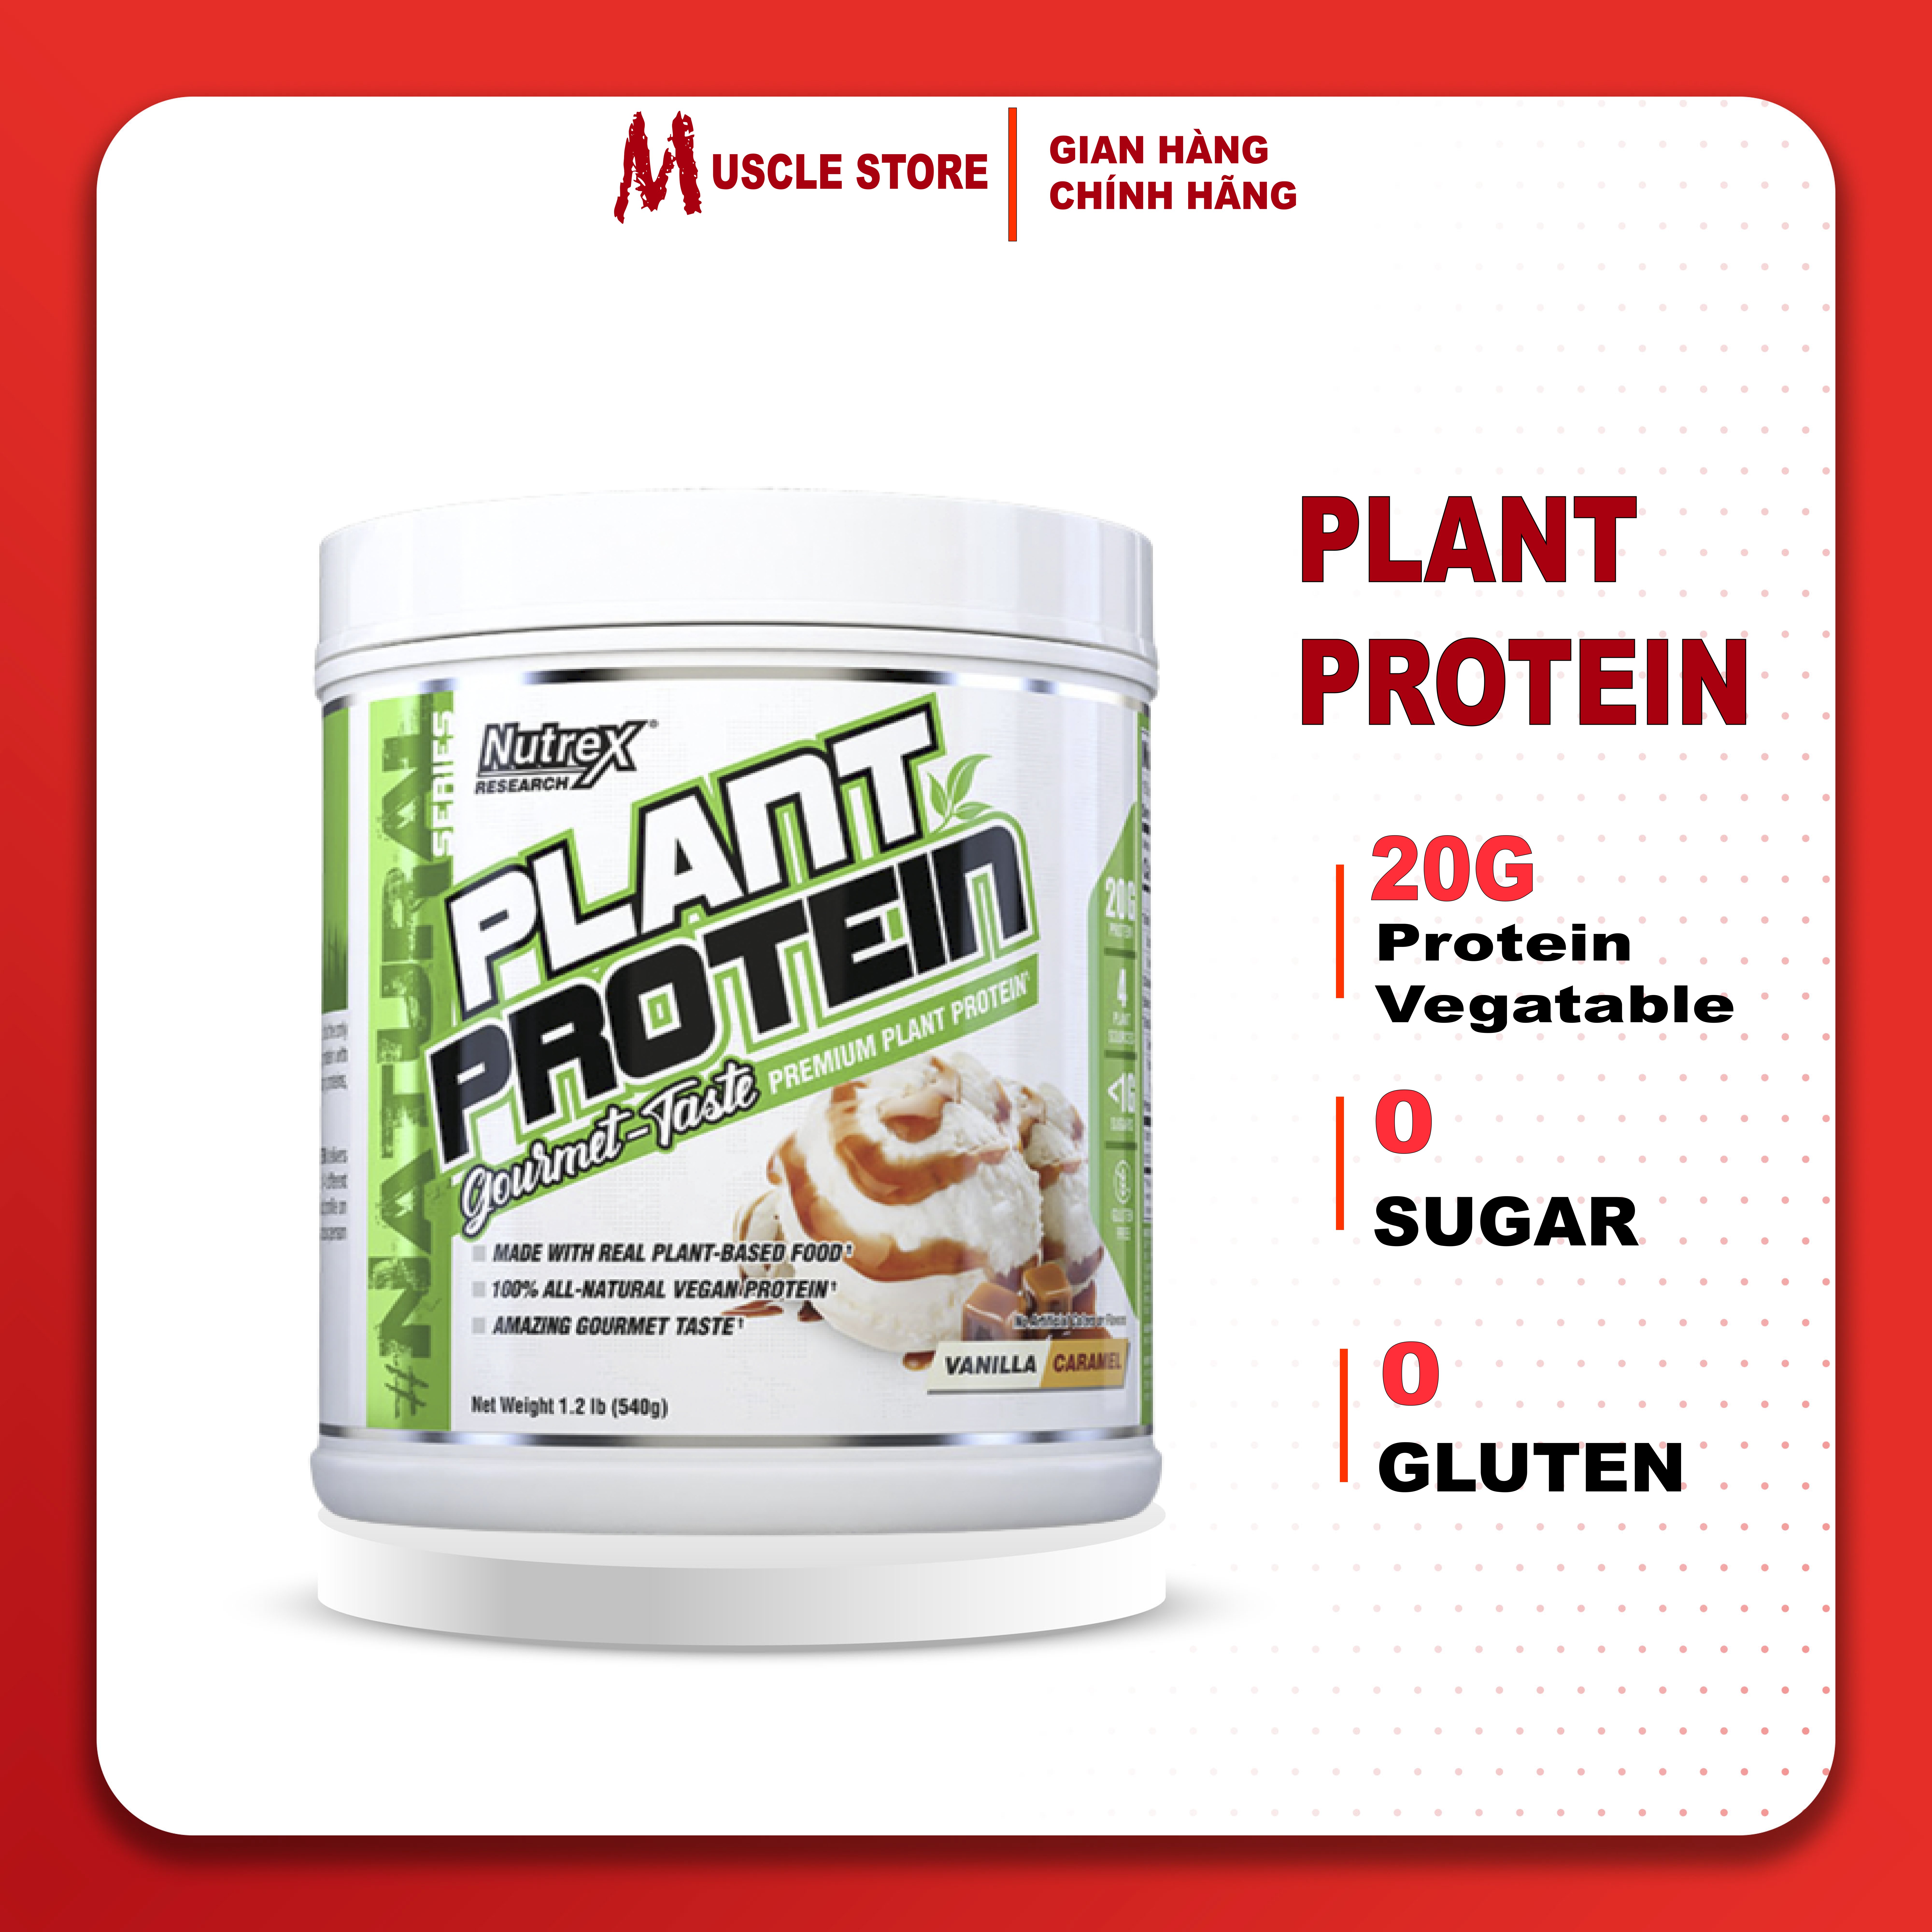 Plant Protein - Nutrex (18 Lần Dùng), Đạm Thực Vật, Thuần Chay (100% Vegan Protein) | Nhập khẩu USA